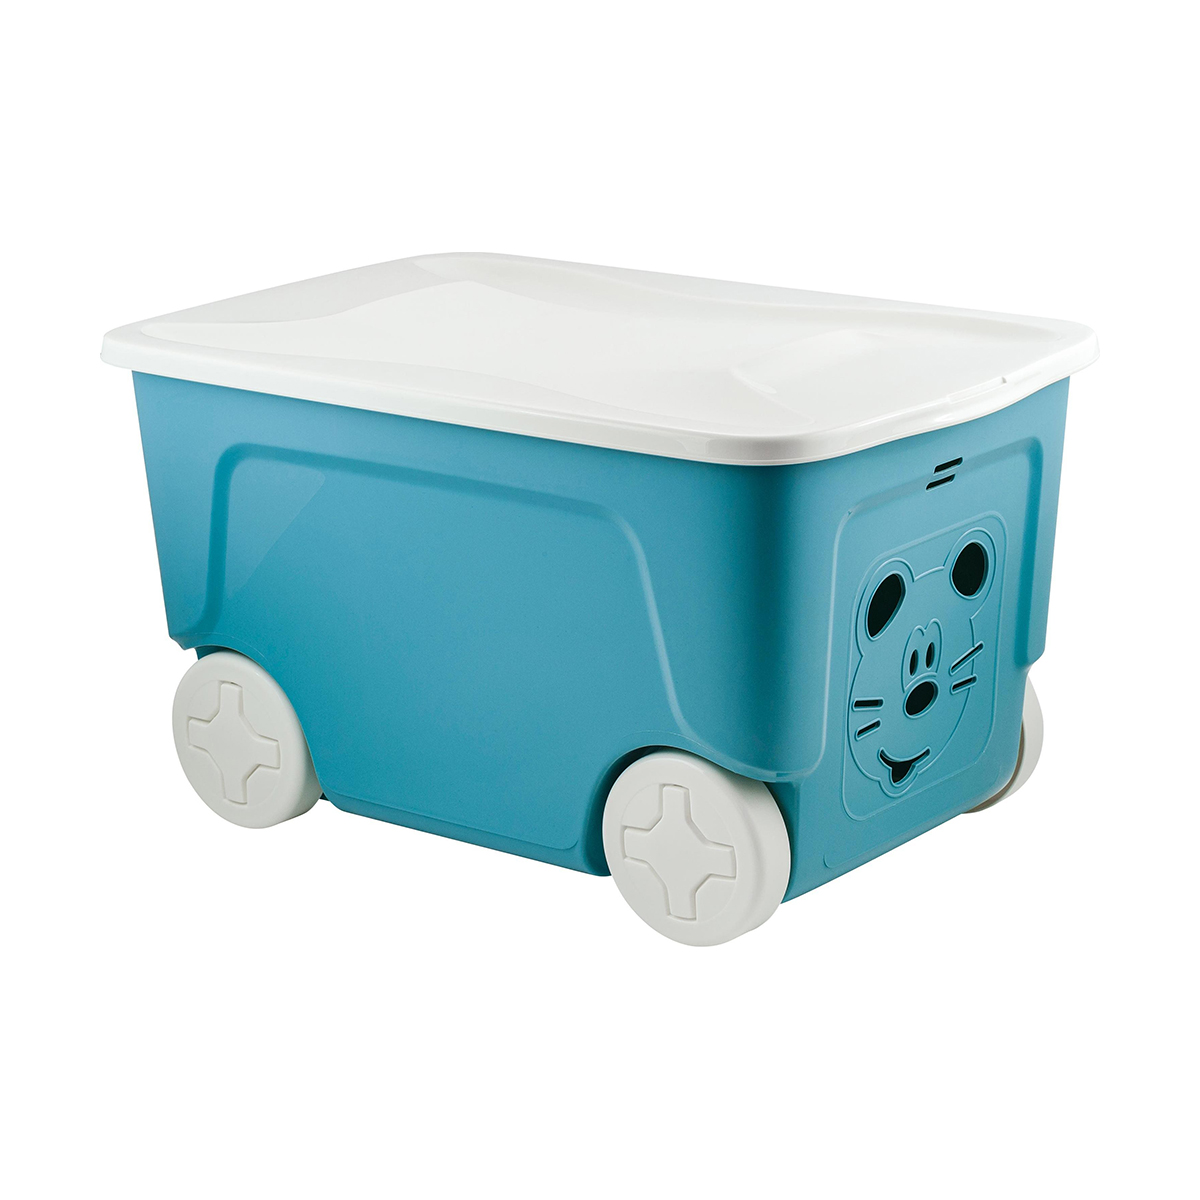 Ящик для игрушек на колесах Lalababy Play with Me, 59 x 38,3 x 33 см, 50 л, синий колокол ящик для хранения на колесах ikea vessla вессла синий 2шт